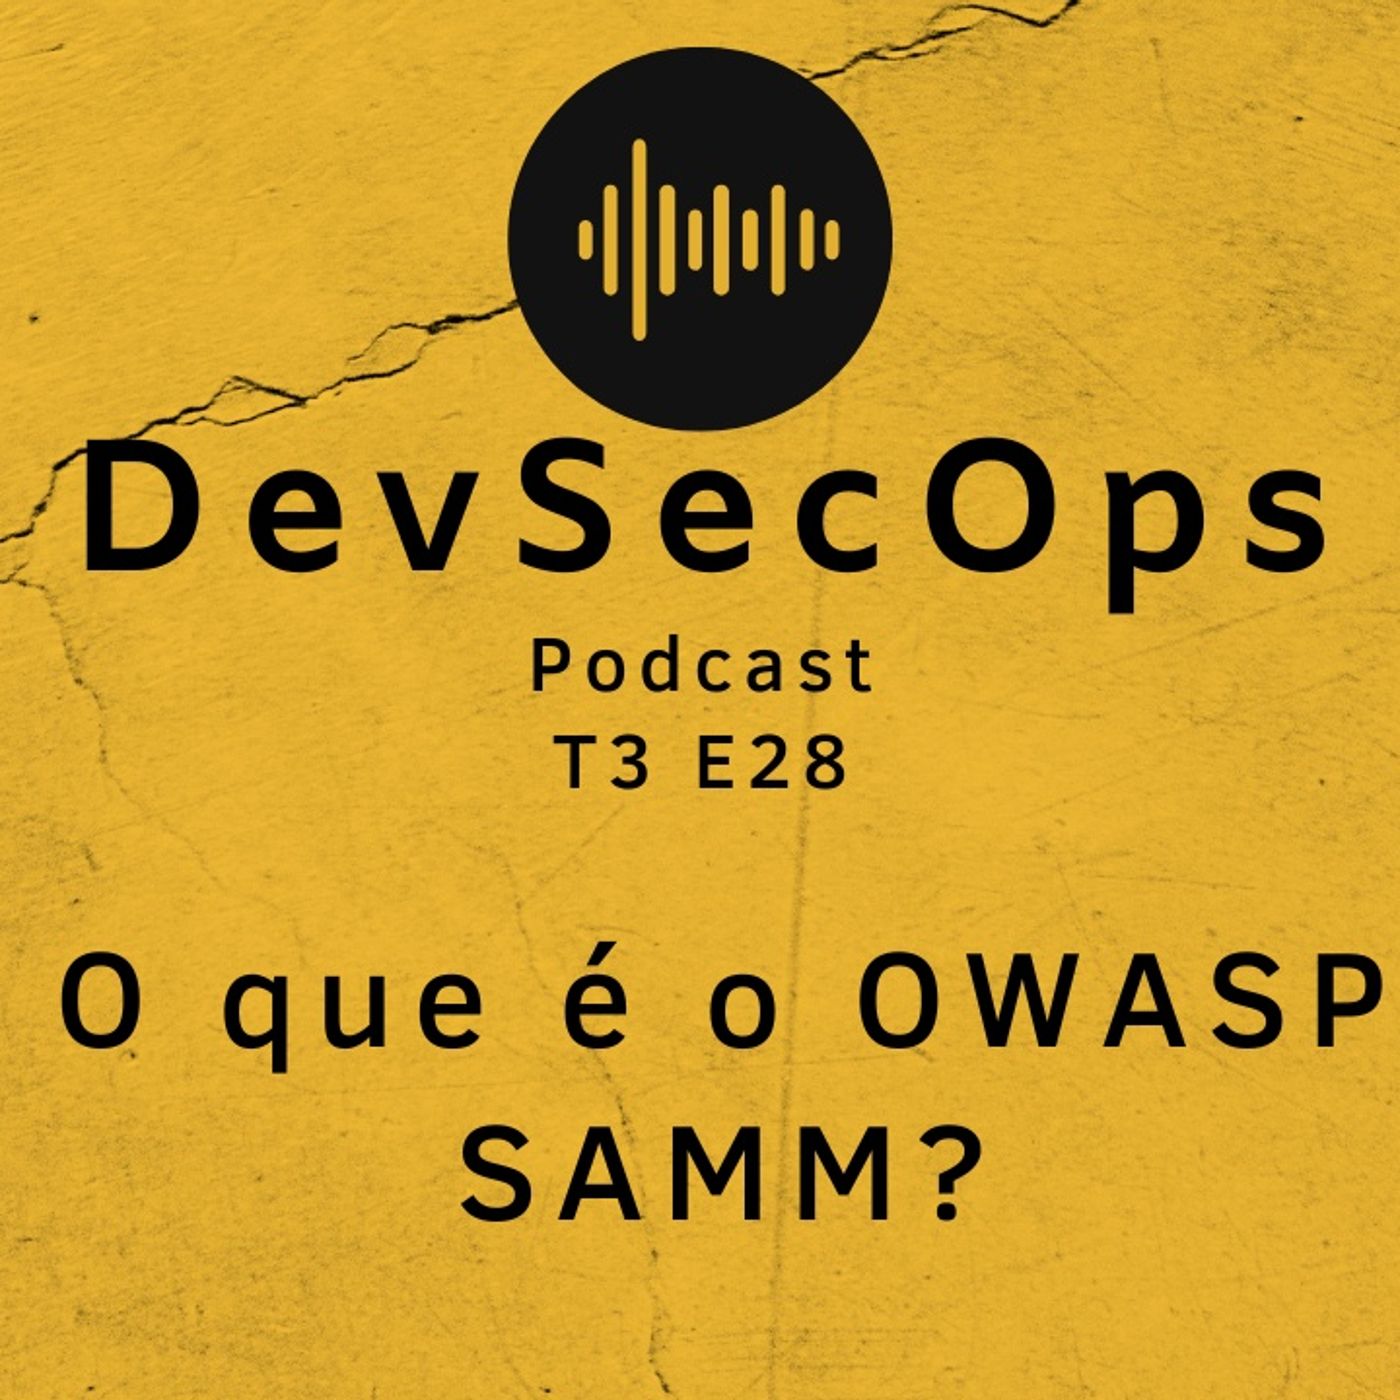 #28 - O que é o OWASP SAMM?